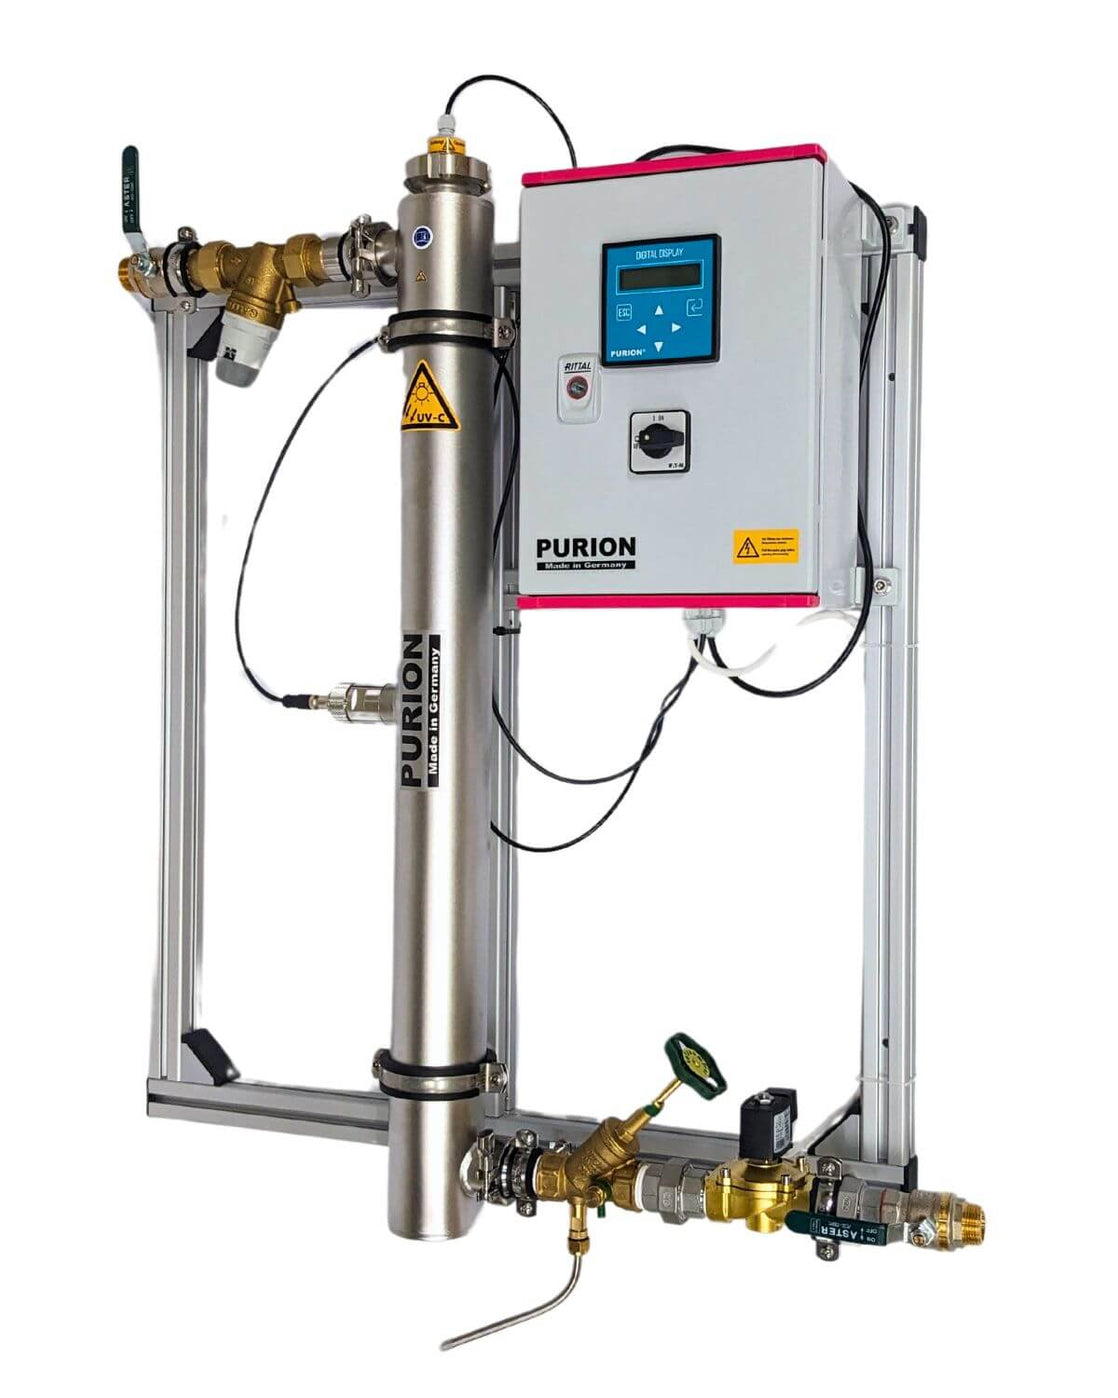 Industrielles Wasseraufbereitungssystem mit Filtern, Rohren und digitalem Bedienfeld auf einem Metallrahmen montiert, mit PURION DVGW Zert. All-in-One-Komponenten der PURION GmbH.